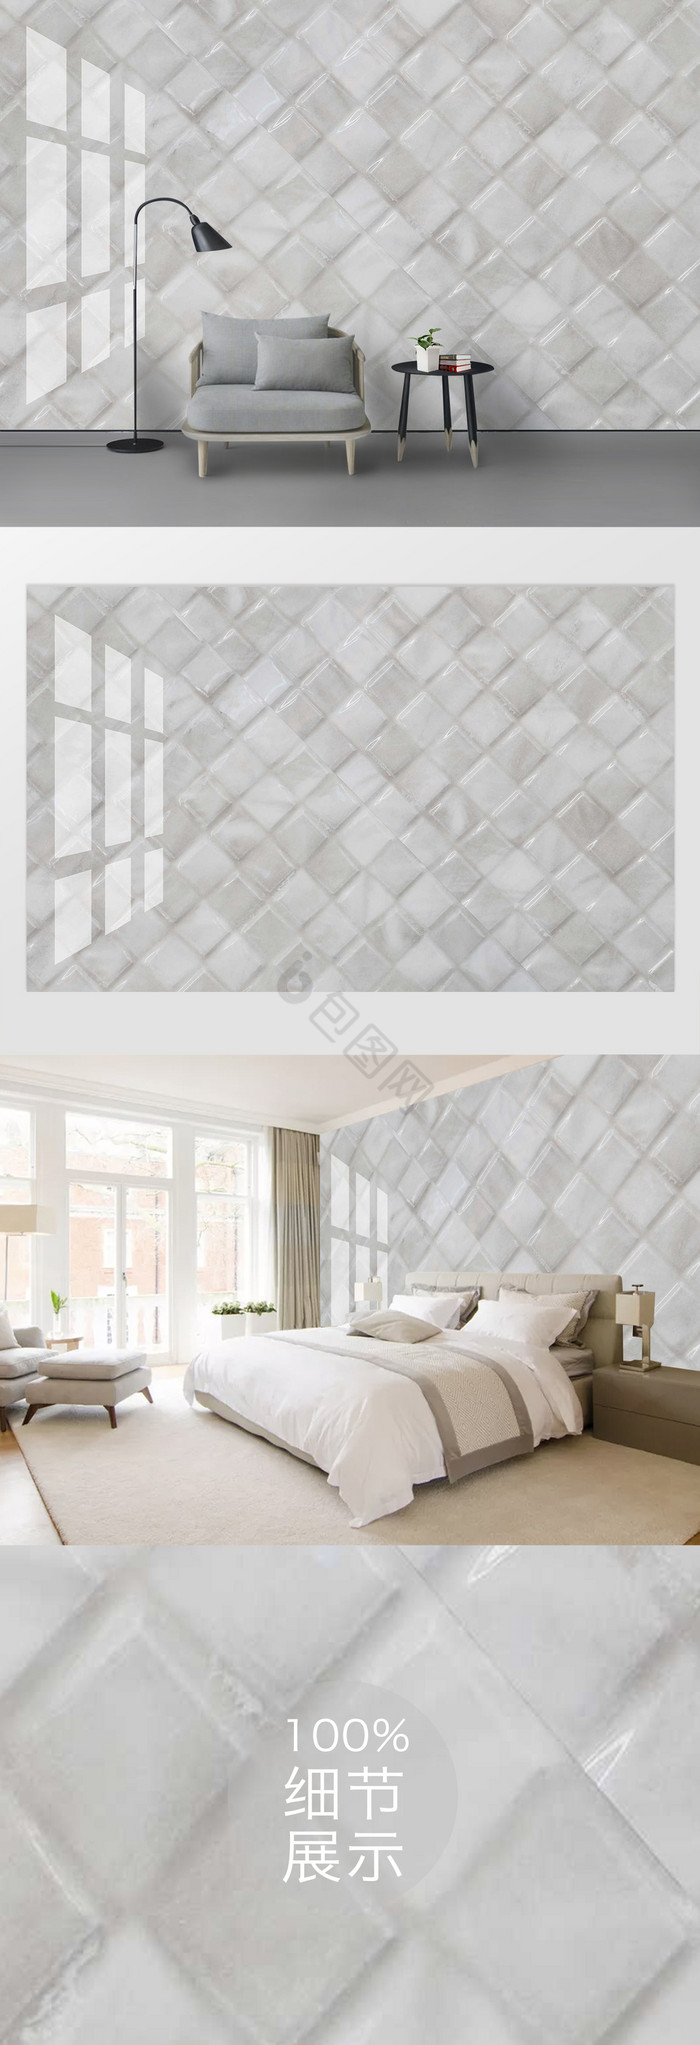 白色水晶瓷砖马赛克纹理背景墙